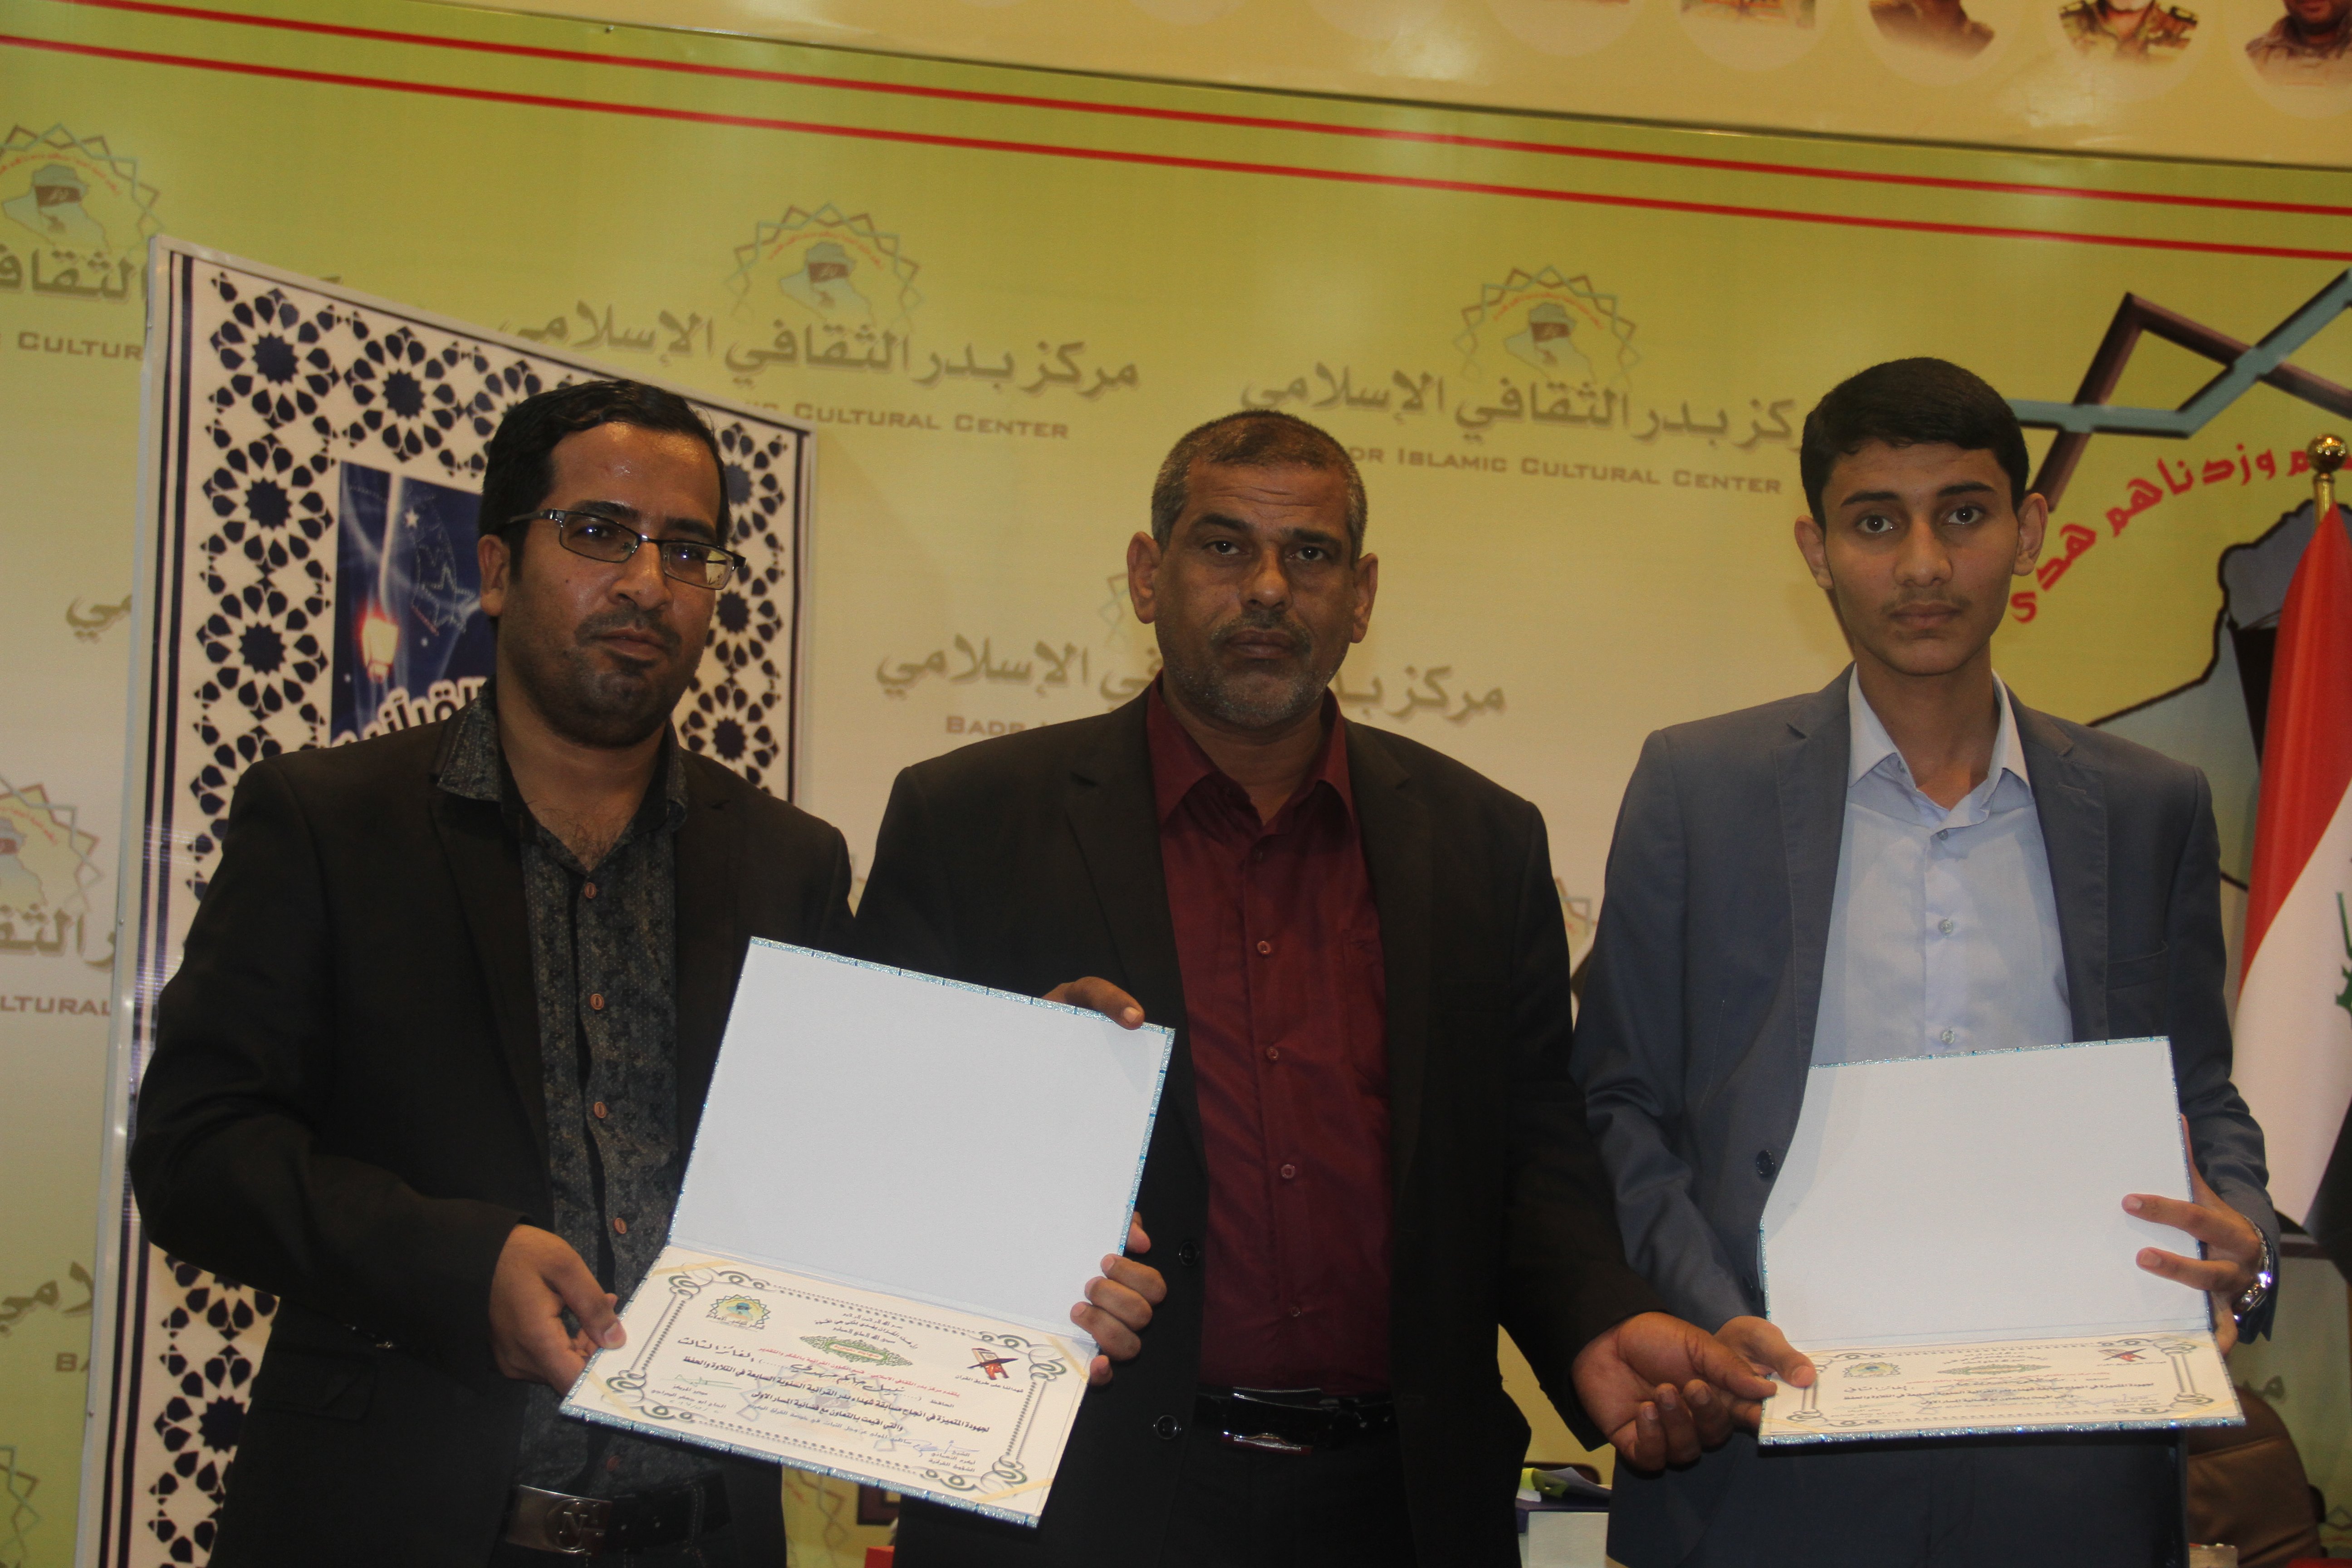 المركز الثاني والثالث من نصيب معهد القرآن الكريم في مسابقة قناة المسار القرآنية 